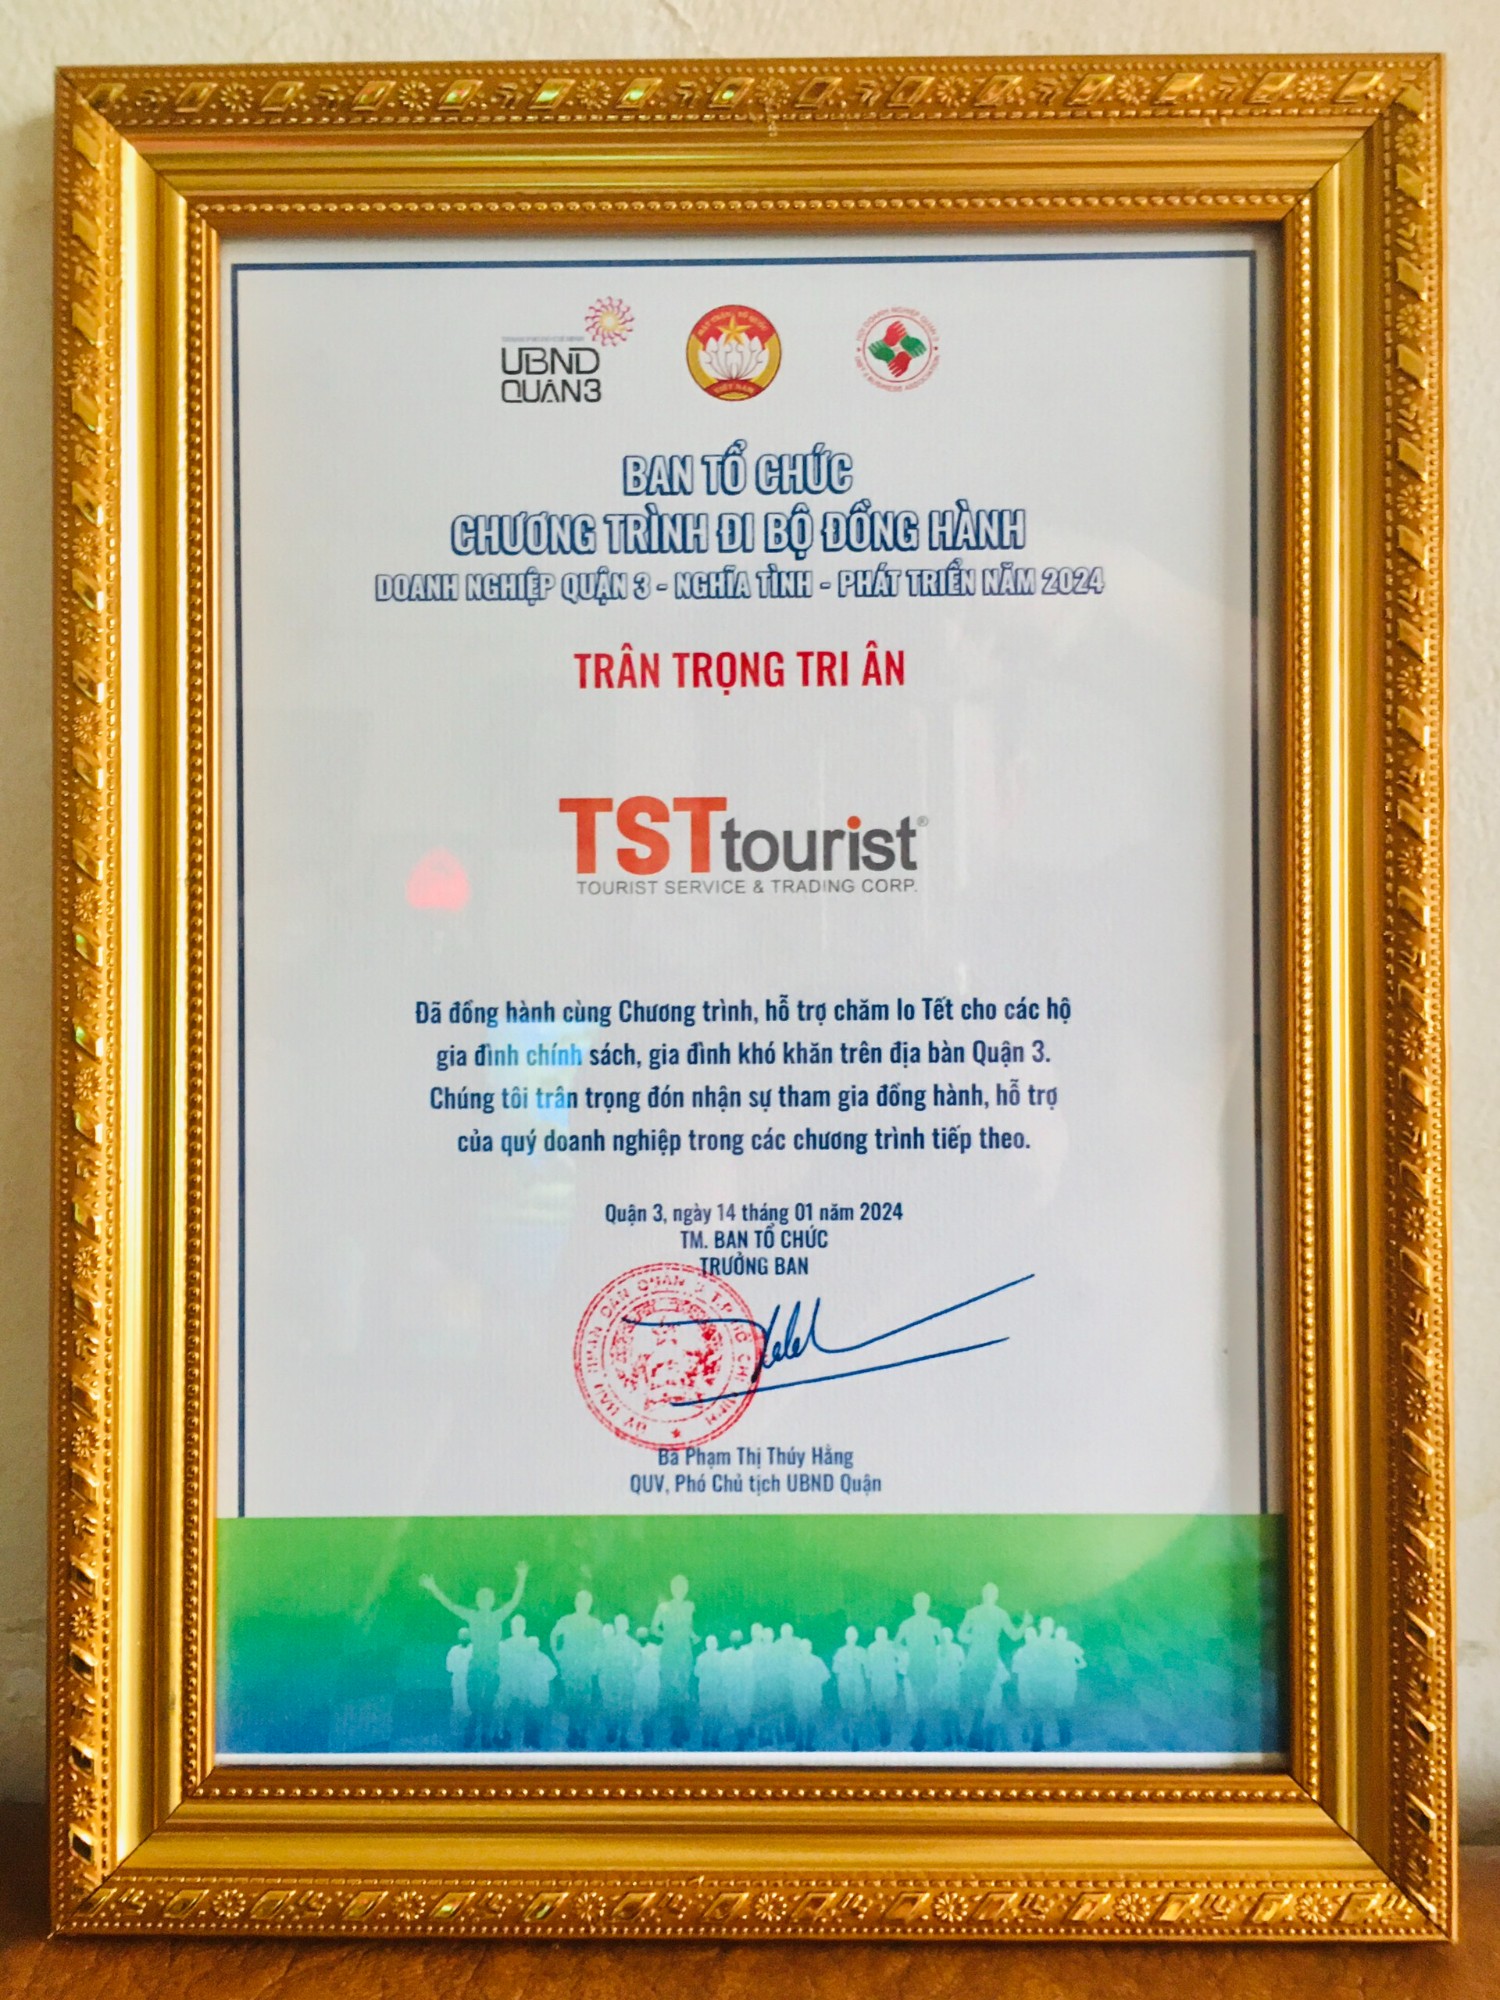  TSTtourist vinh hạnh góp phần giúp đỡ các hoàn cảnh khó khăn